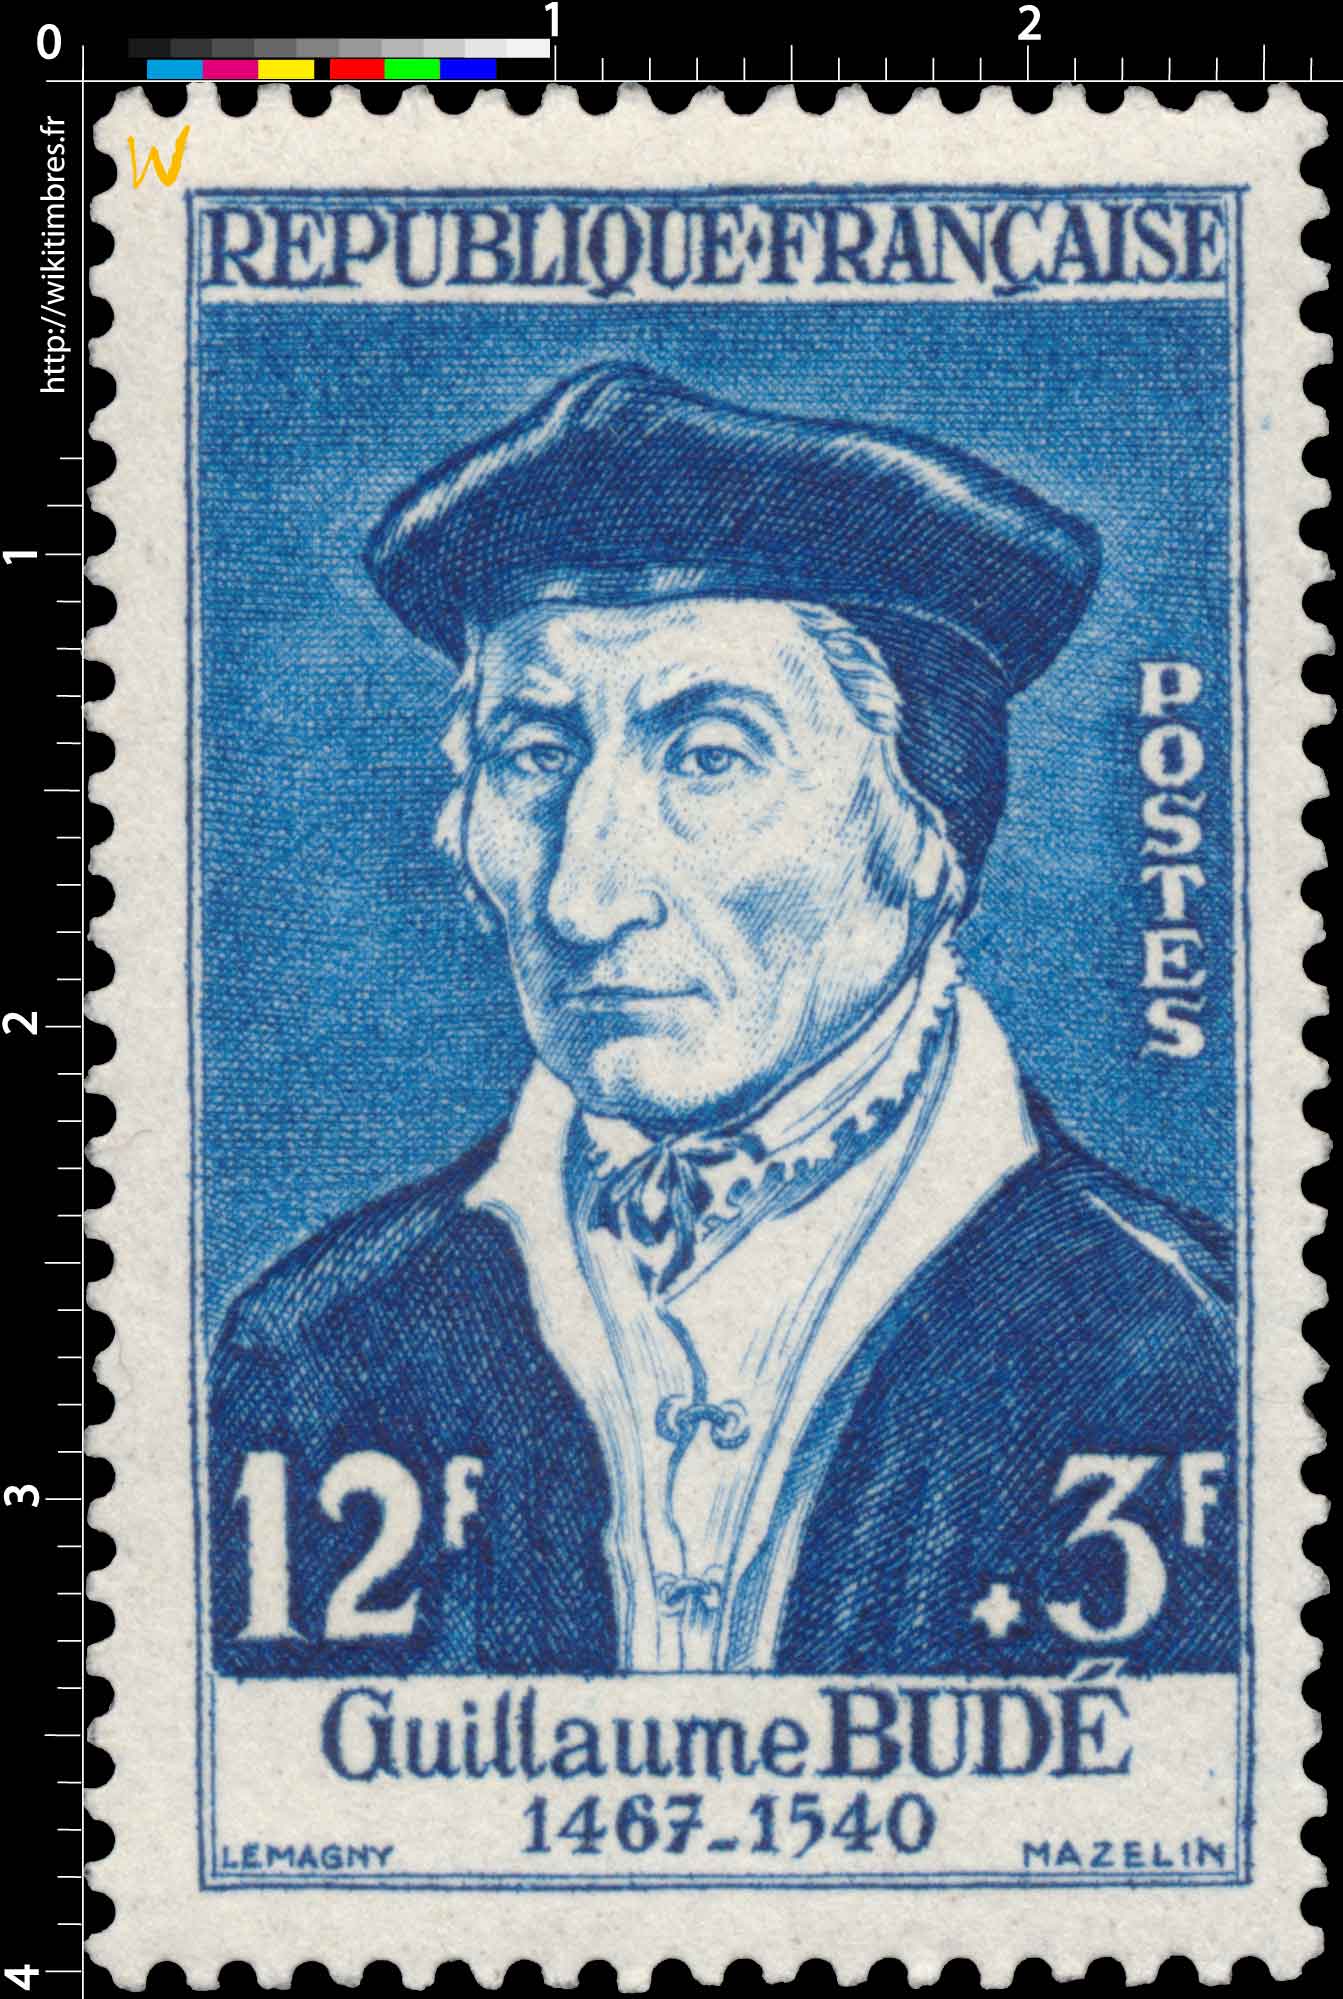 Guillaume BUDÉ 1467-1540